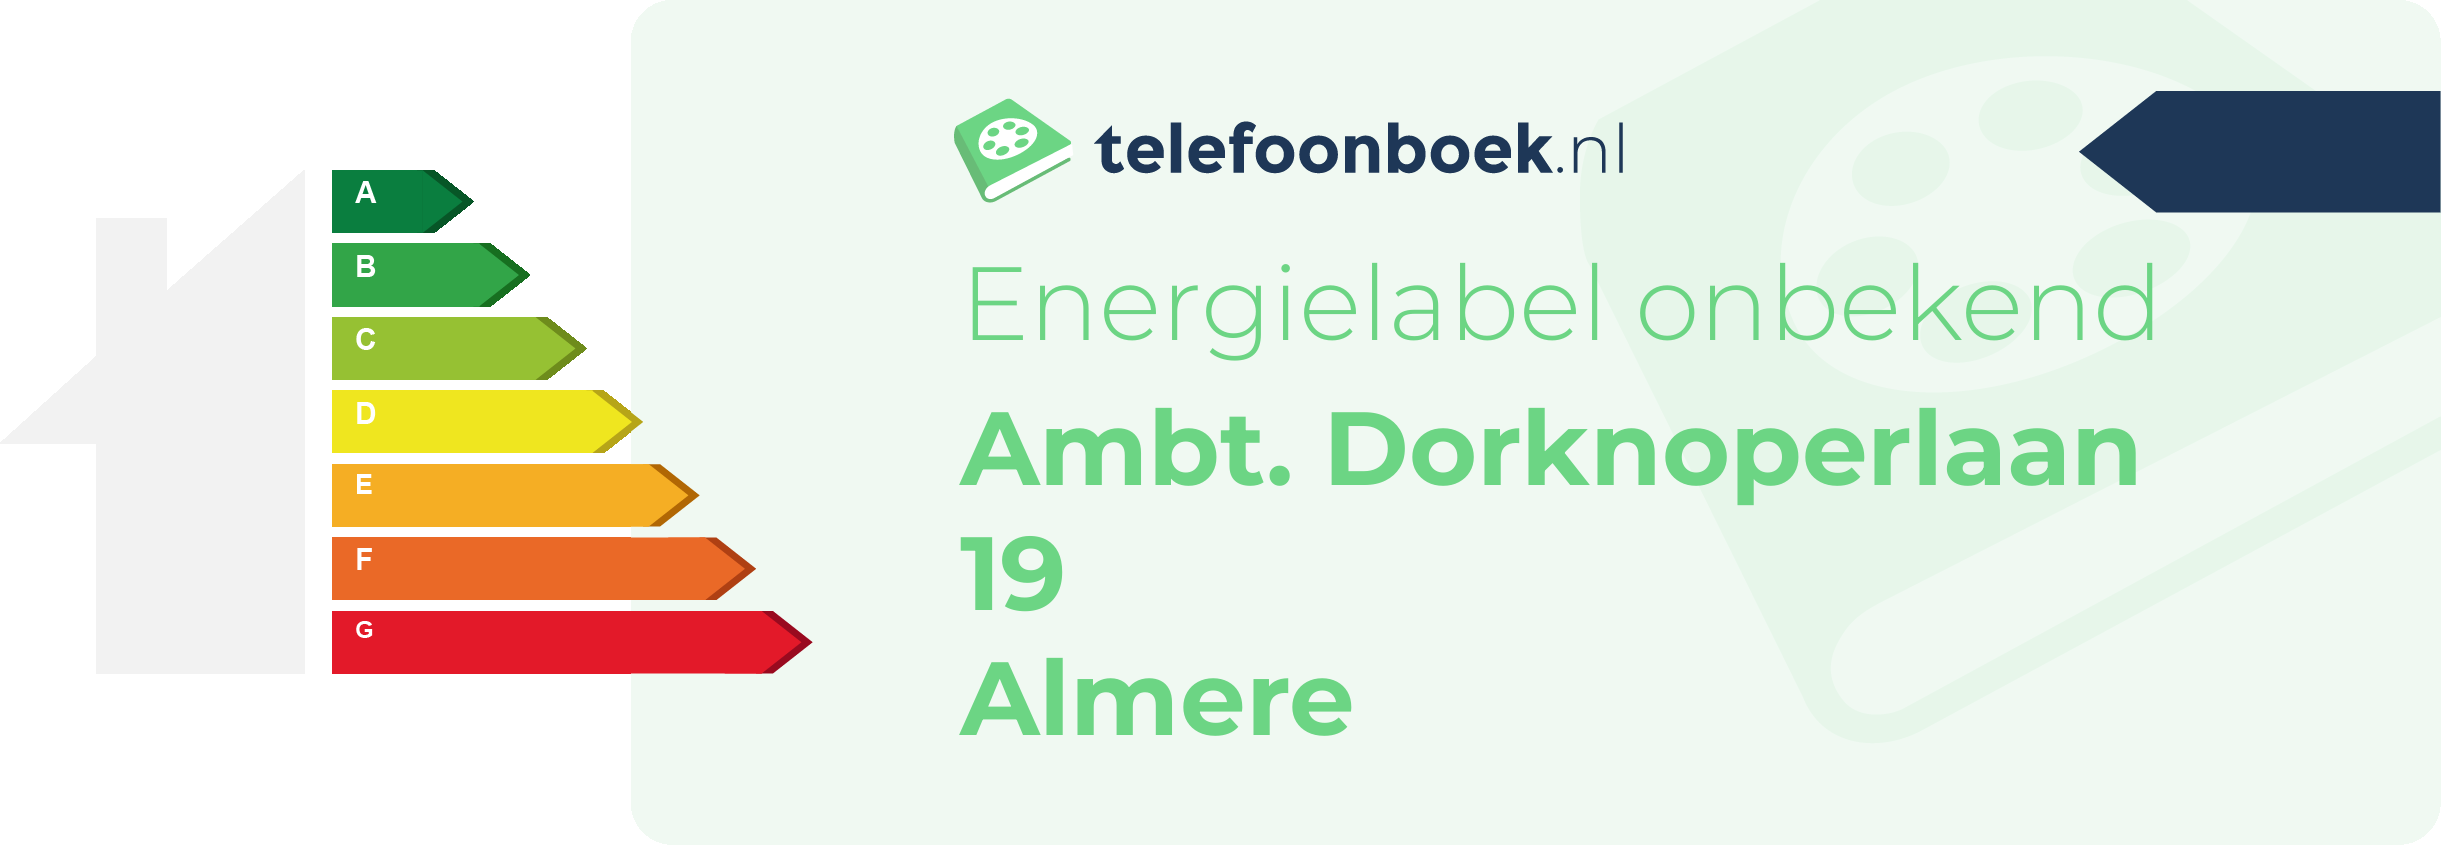 Energielabel Ambt. Dorknoperlaan 19 Almere